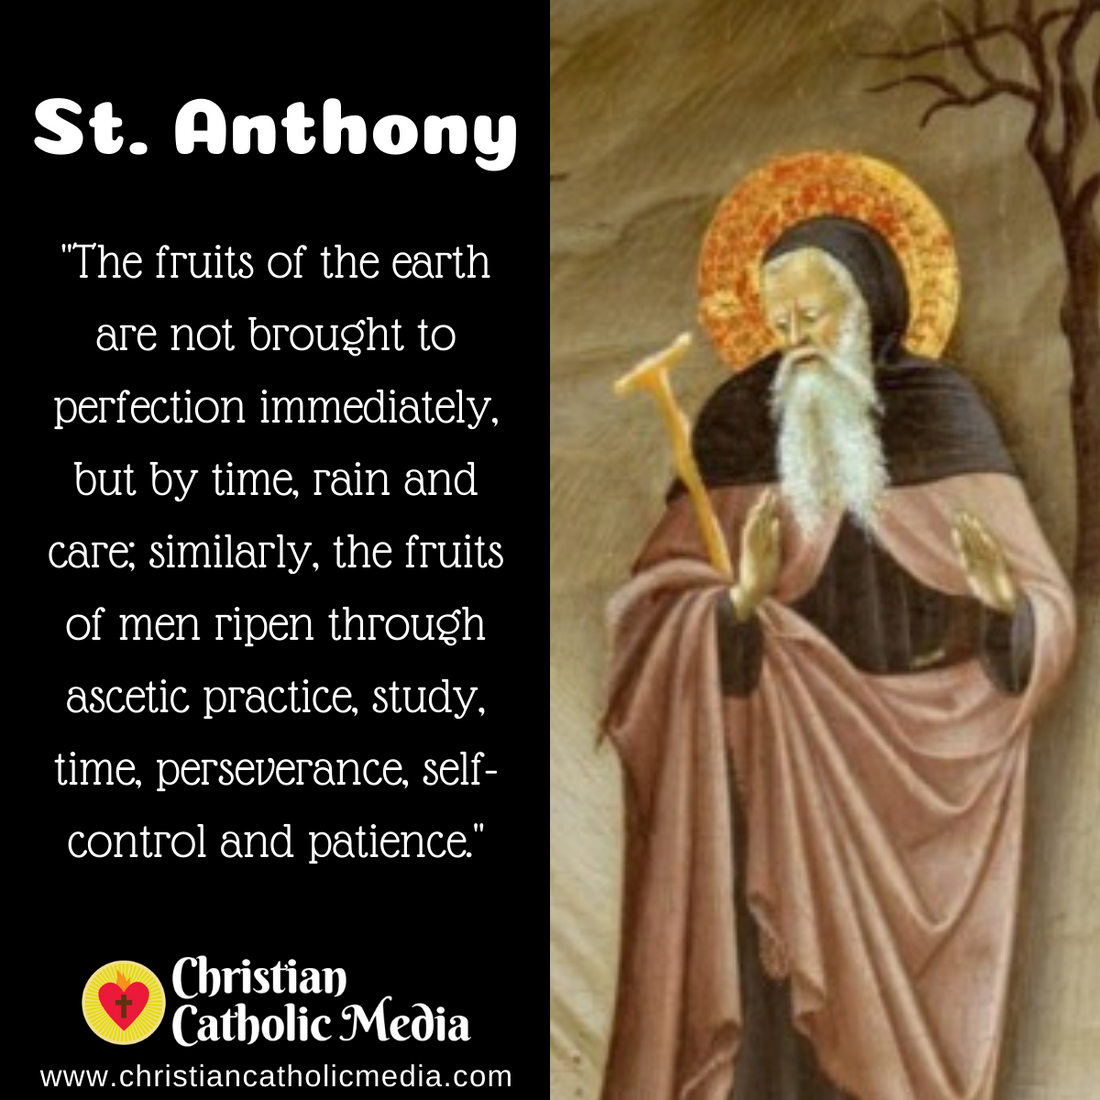 St. Anthony - Sunday January 17, 2021